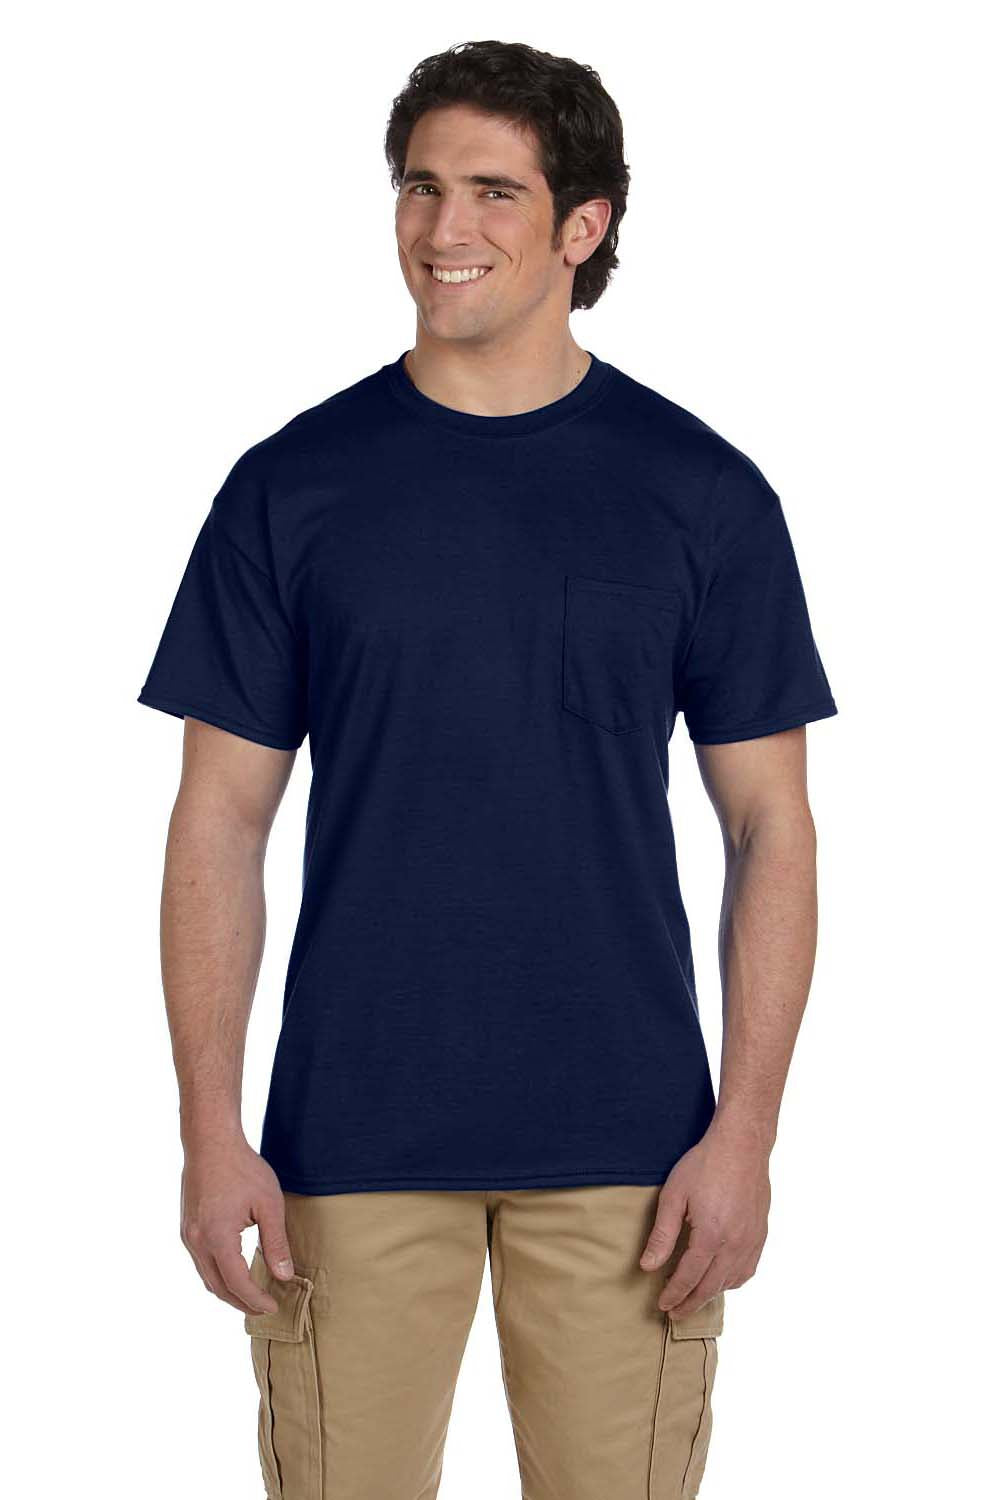 Gildan G830 Mens DryBlend Moisture Wicking Short Sleeve Crewneck T-Shirt w/ Pocket Navy Blue Front